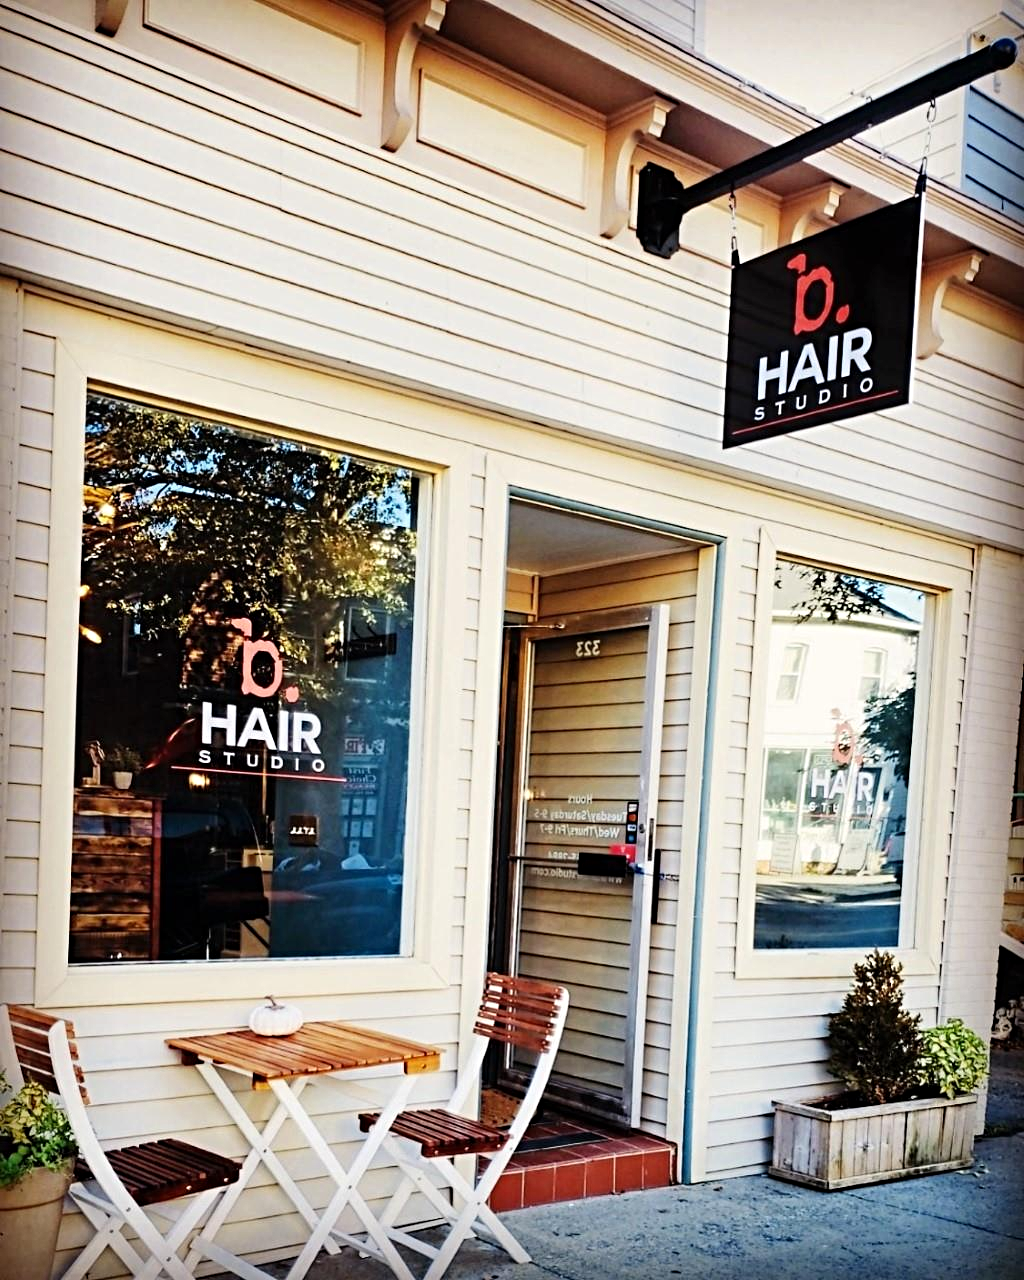 B. Hair Studio In Beacon NY | Vagaro